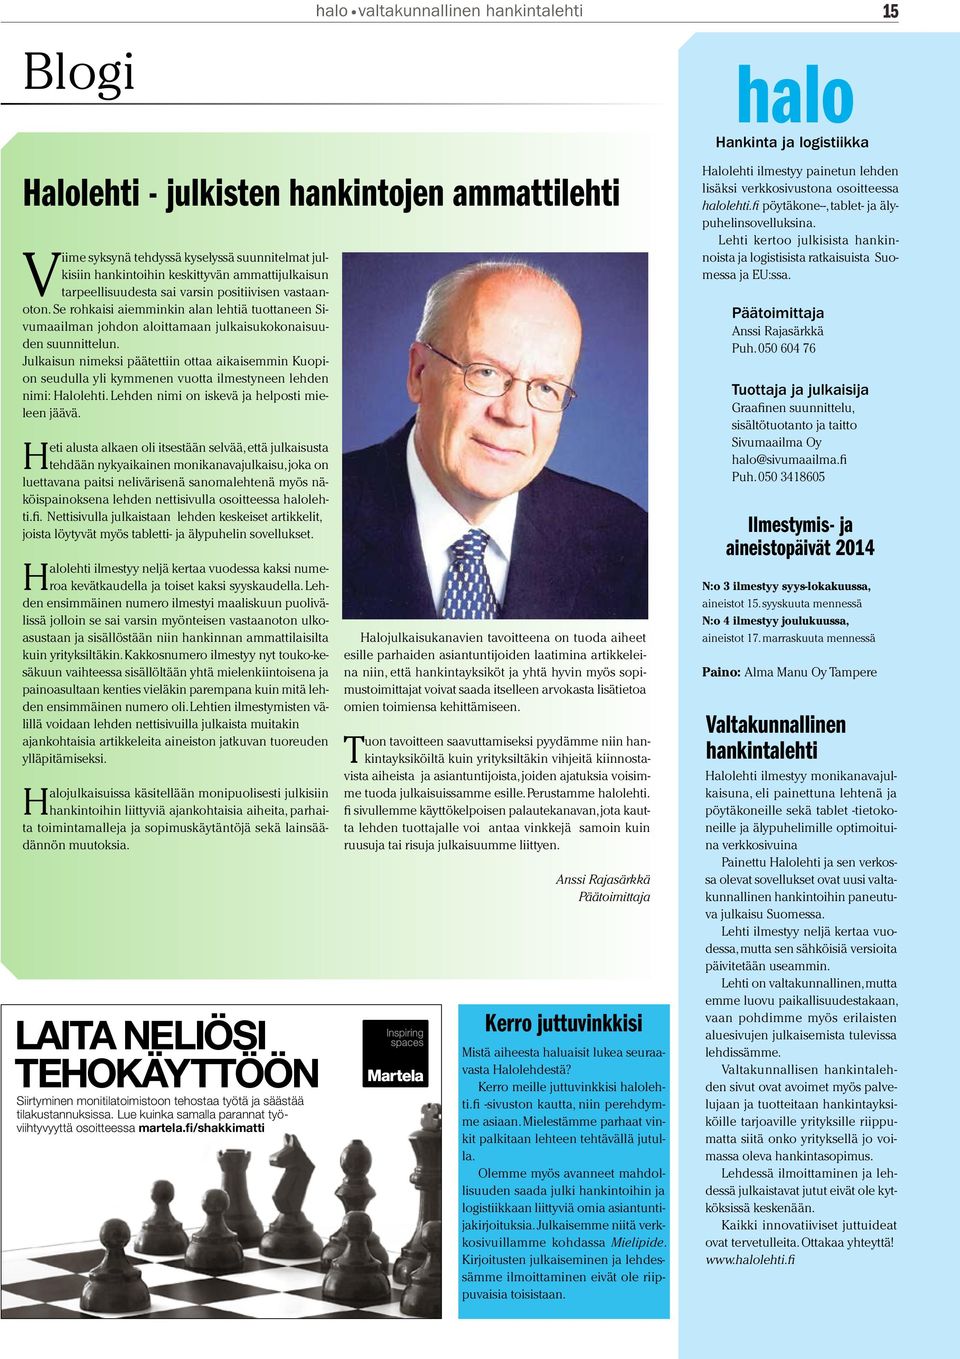 Julkaisun nimeksi päätettiin ottaa aikaisemmin Kuopion seudulla yli kymmenen vuotta ilmestyneen lehden nimi: Halolehti. Lehden nimi on iskevä ja helposti mieleen jäävä.